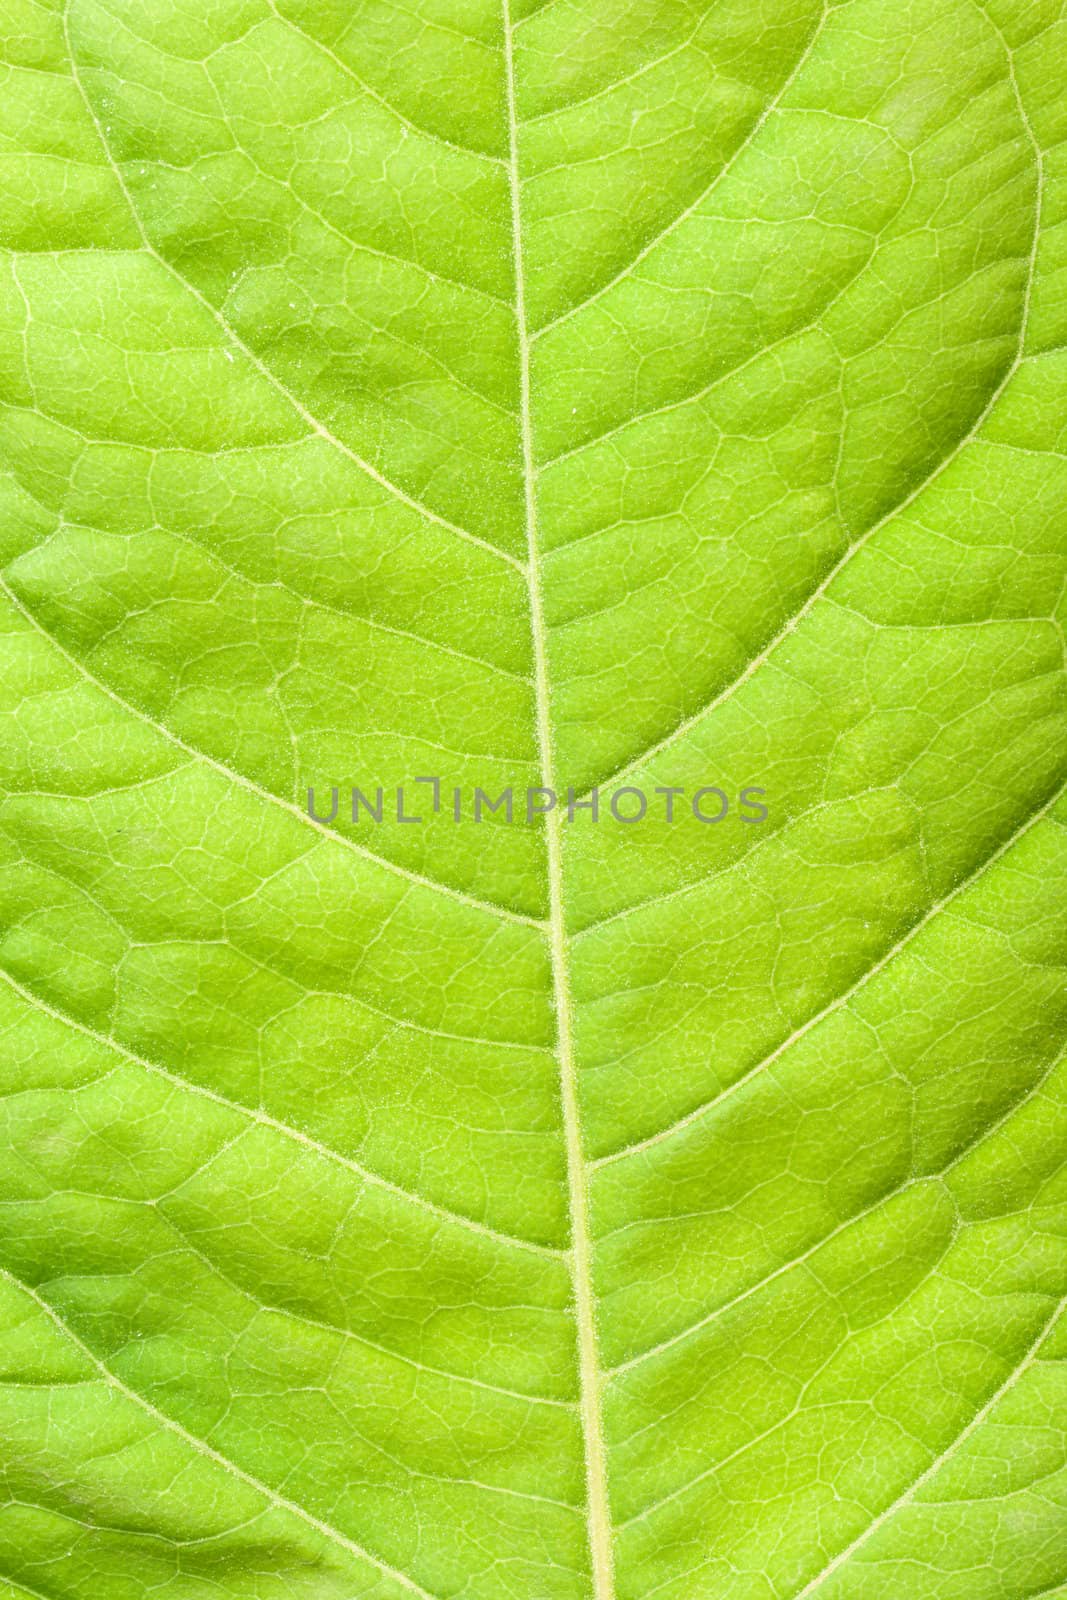 Green leaf close up by dimol